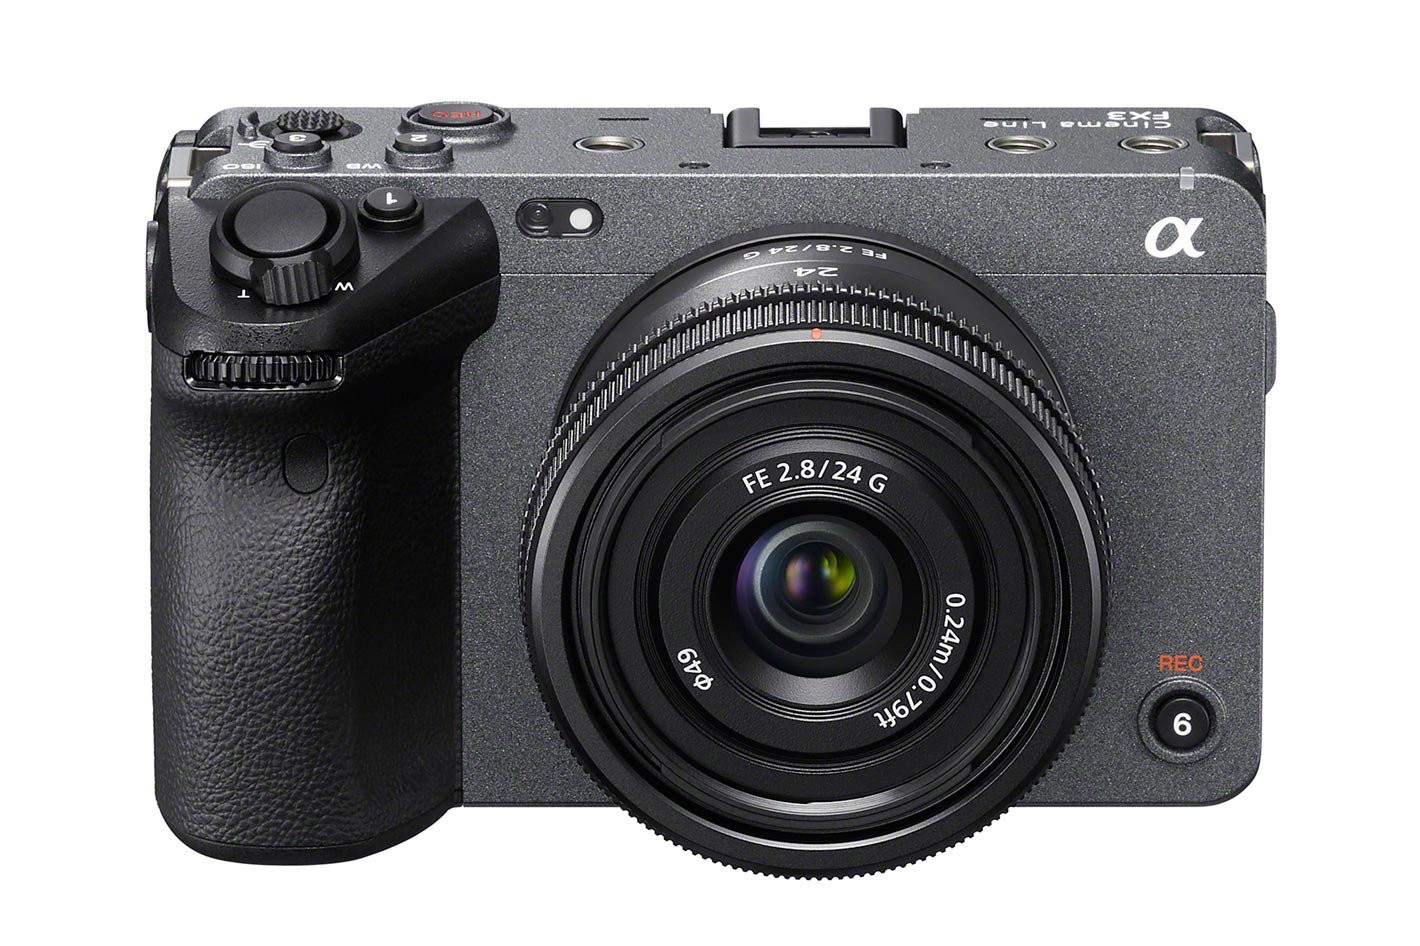 Sony: three new G Lenses to the full frame E-mount line-up